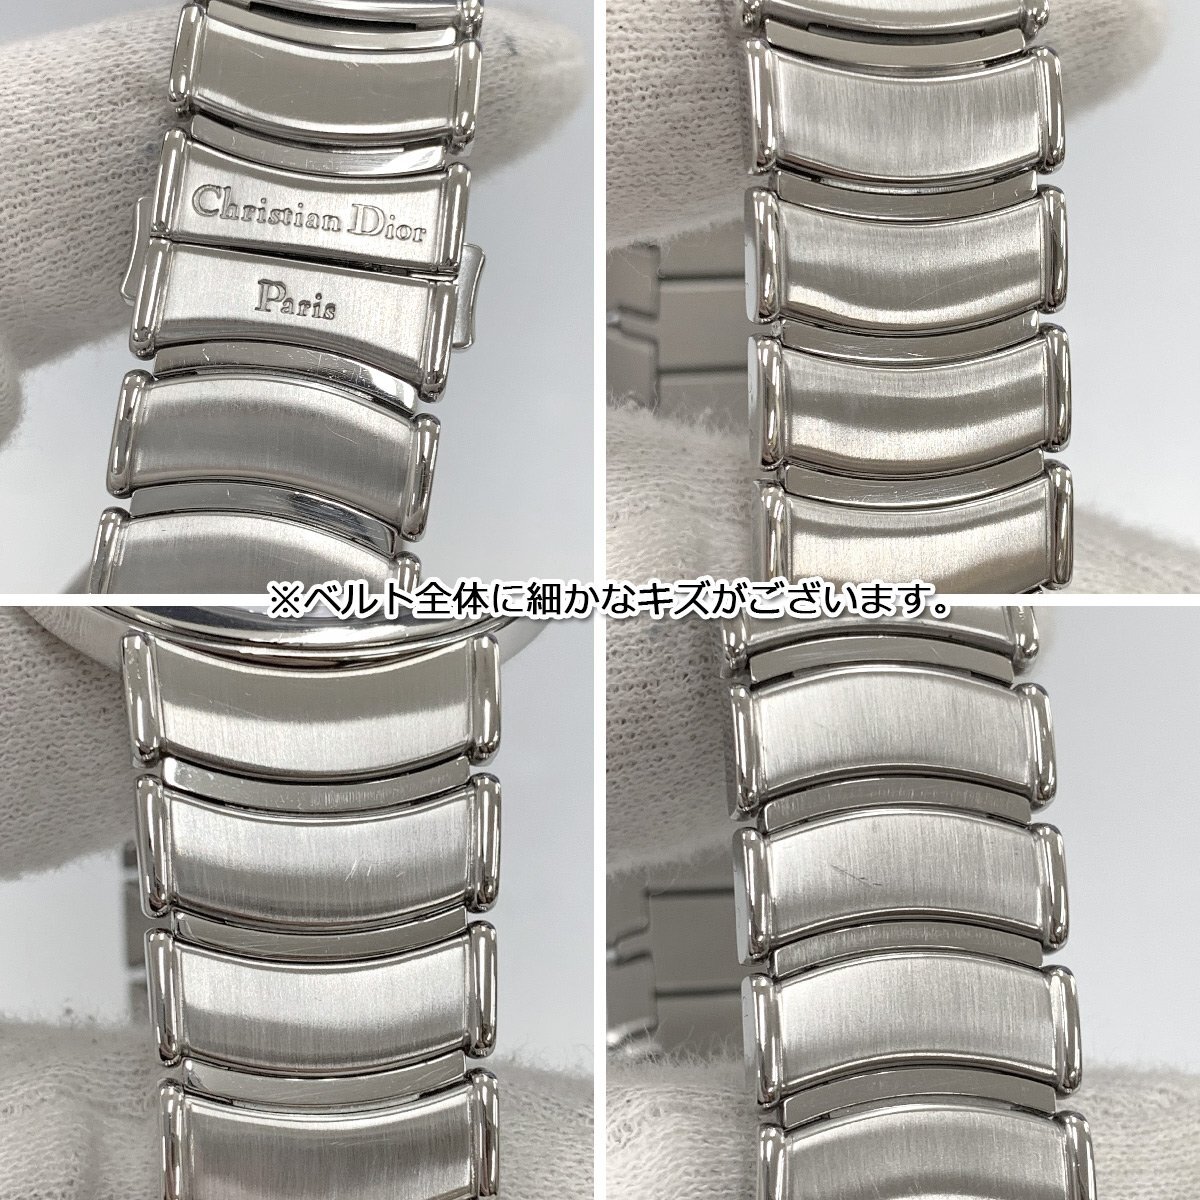 SA63■ [送料無料/中古美品] ディオール Christian Dior クォーツ腕時計 D77-100 ホワイト×シルバーの画像7